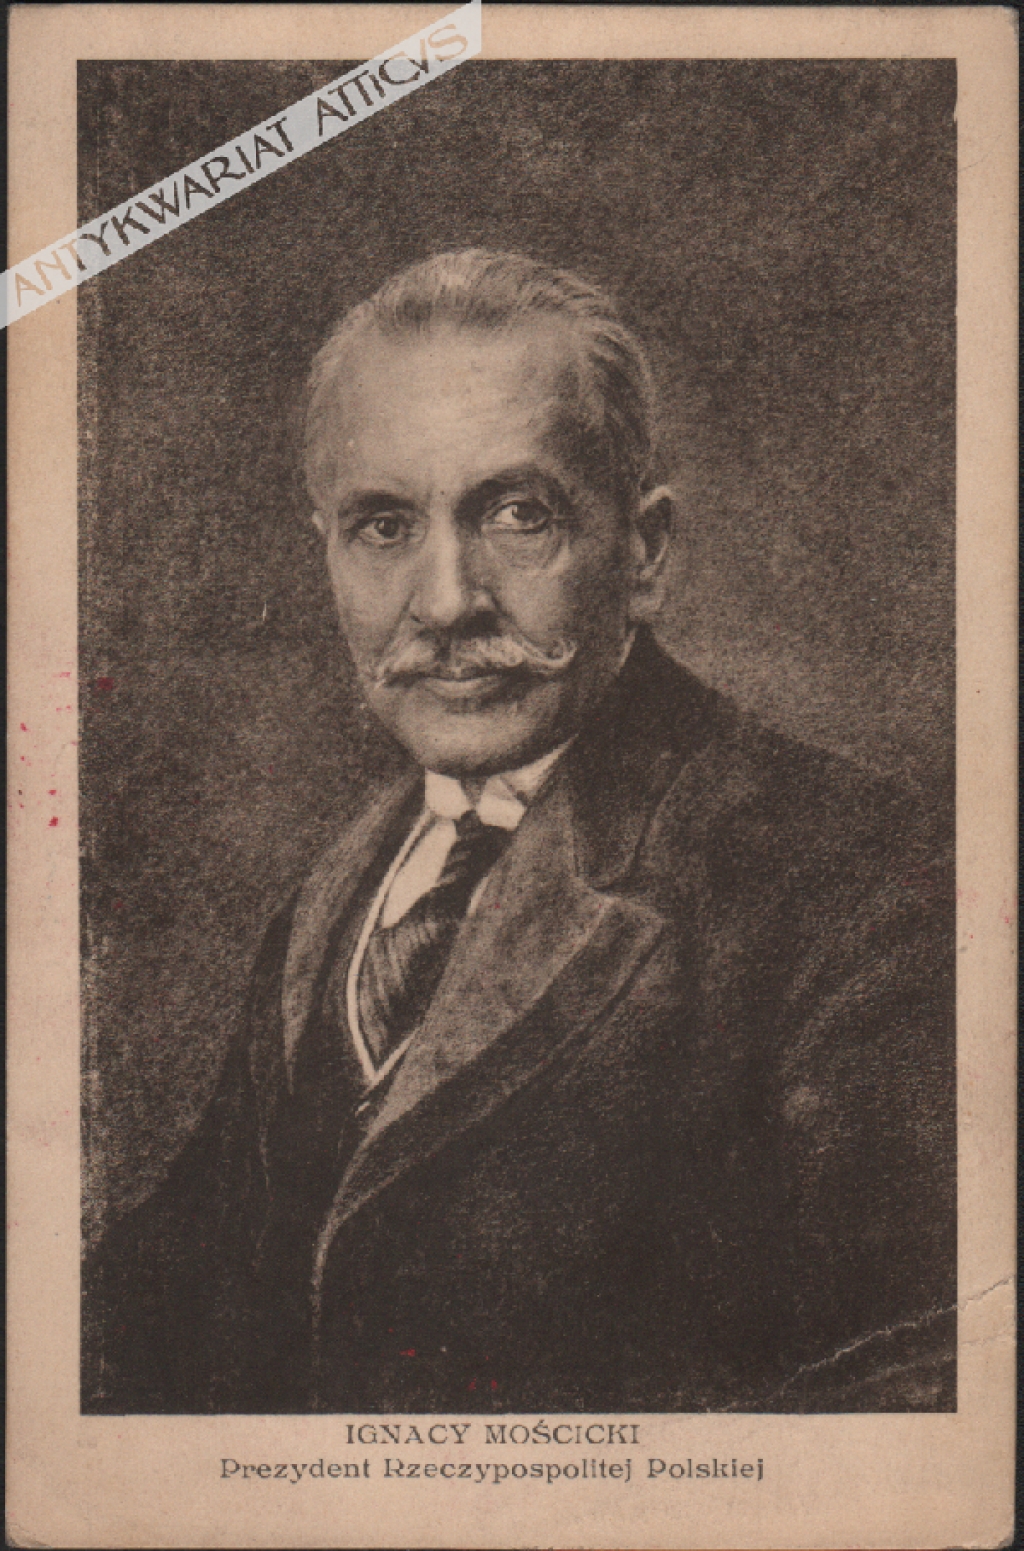 [pocztówka, lata 1930-te] Ignacy Mościcki. Prezydent Rzeczypospolitej Polskiej